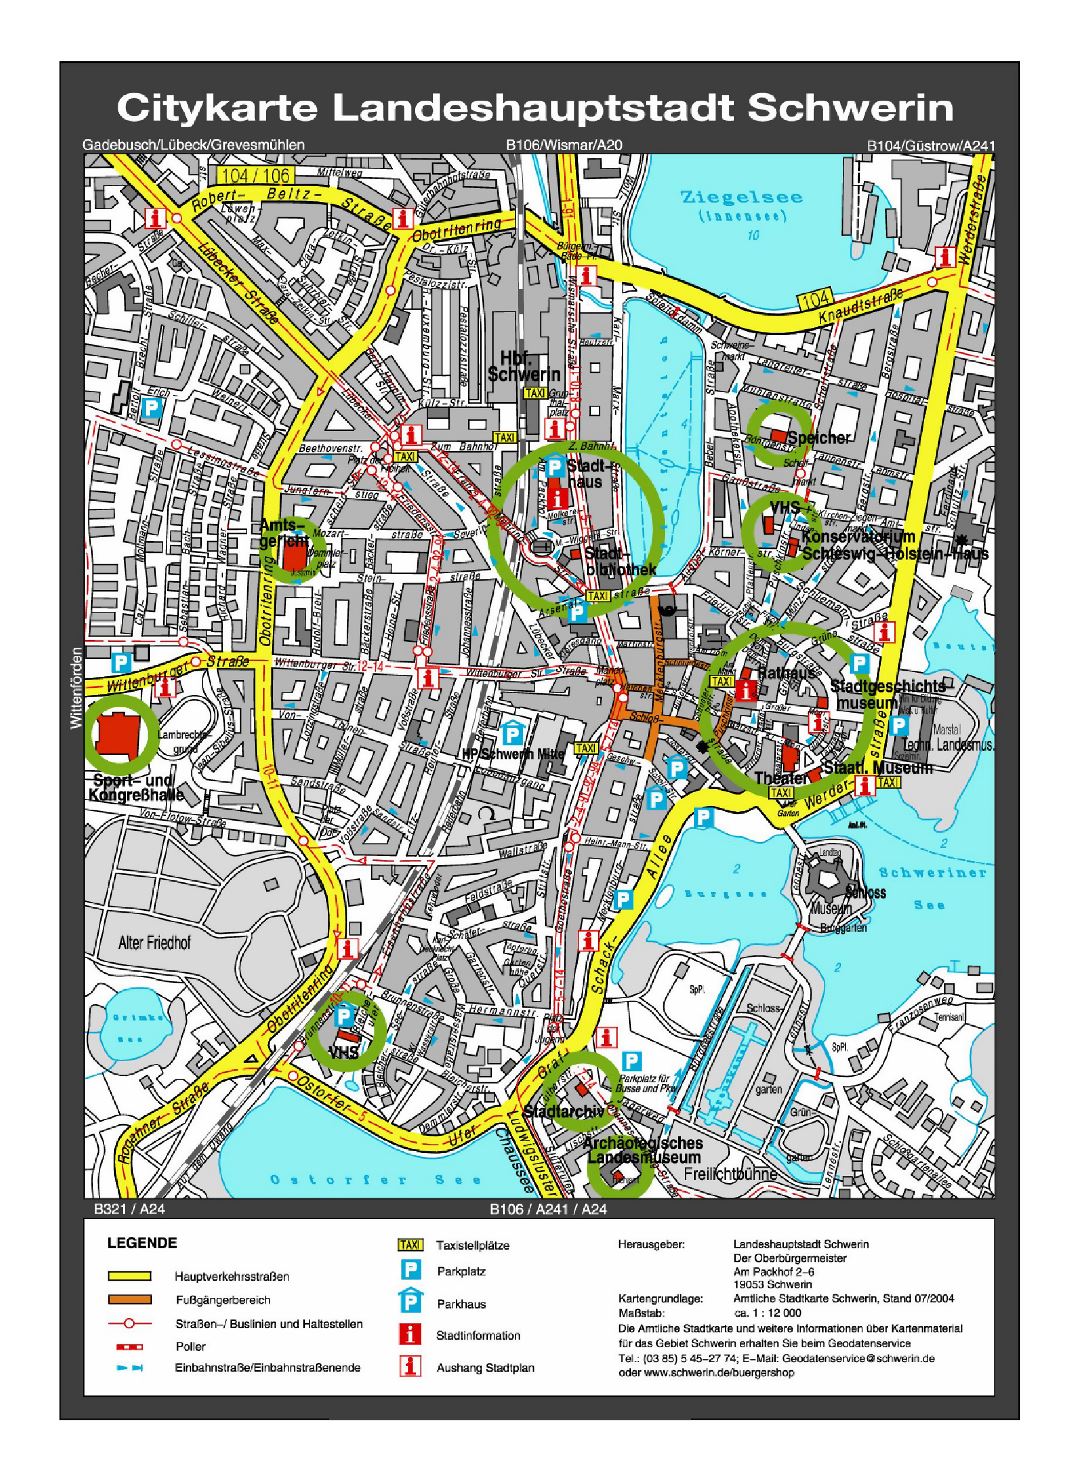 Большая детальная туристическая карта центральной части города Шверин